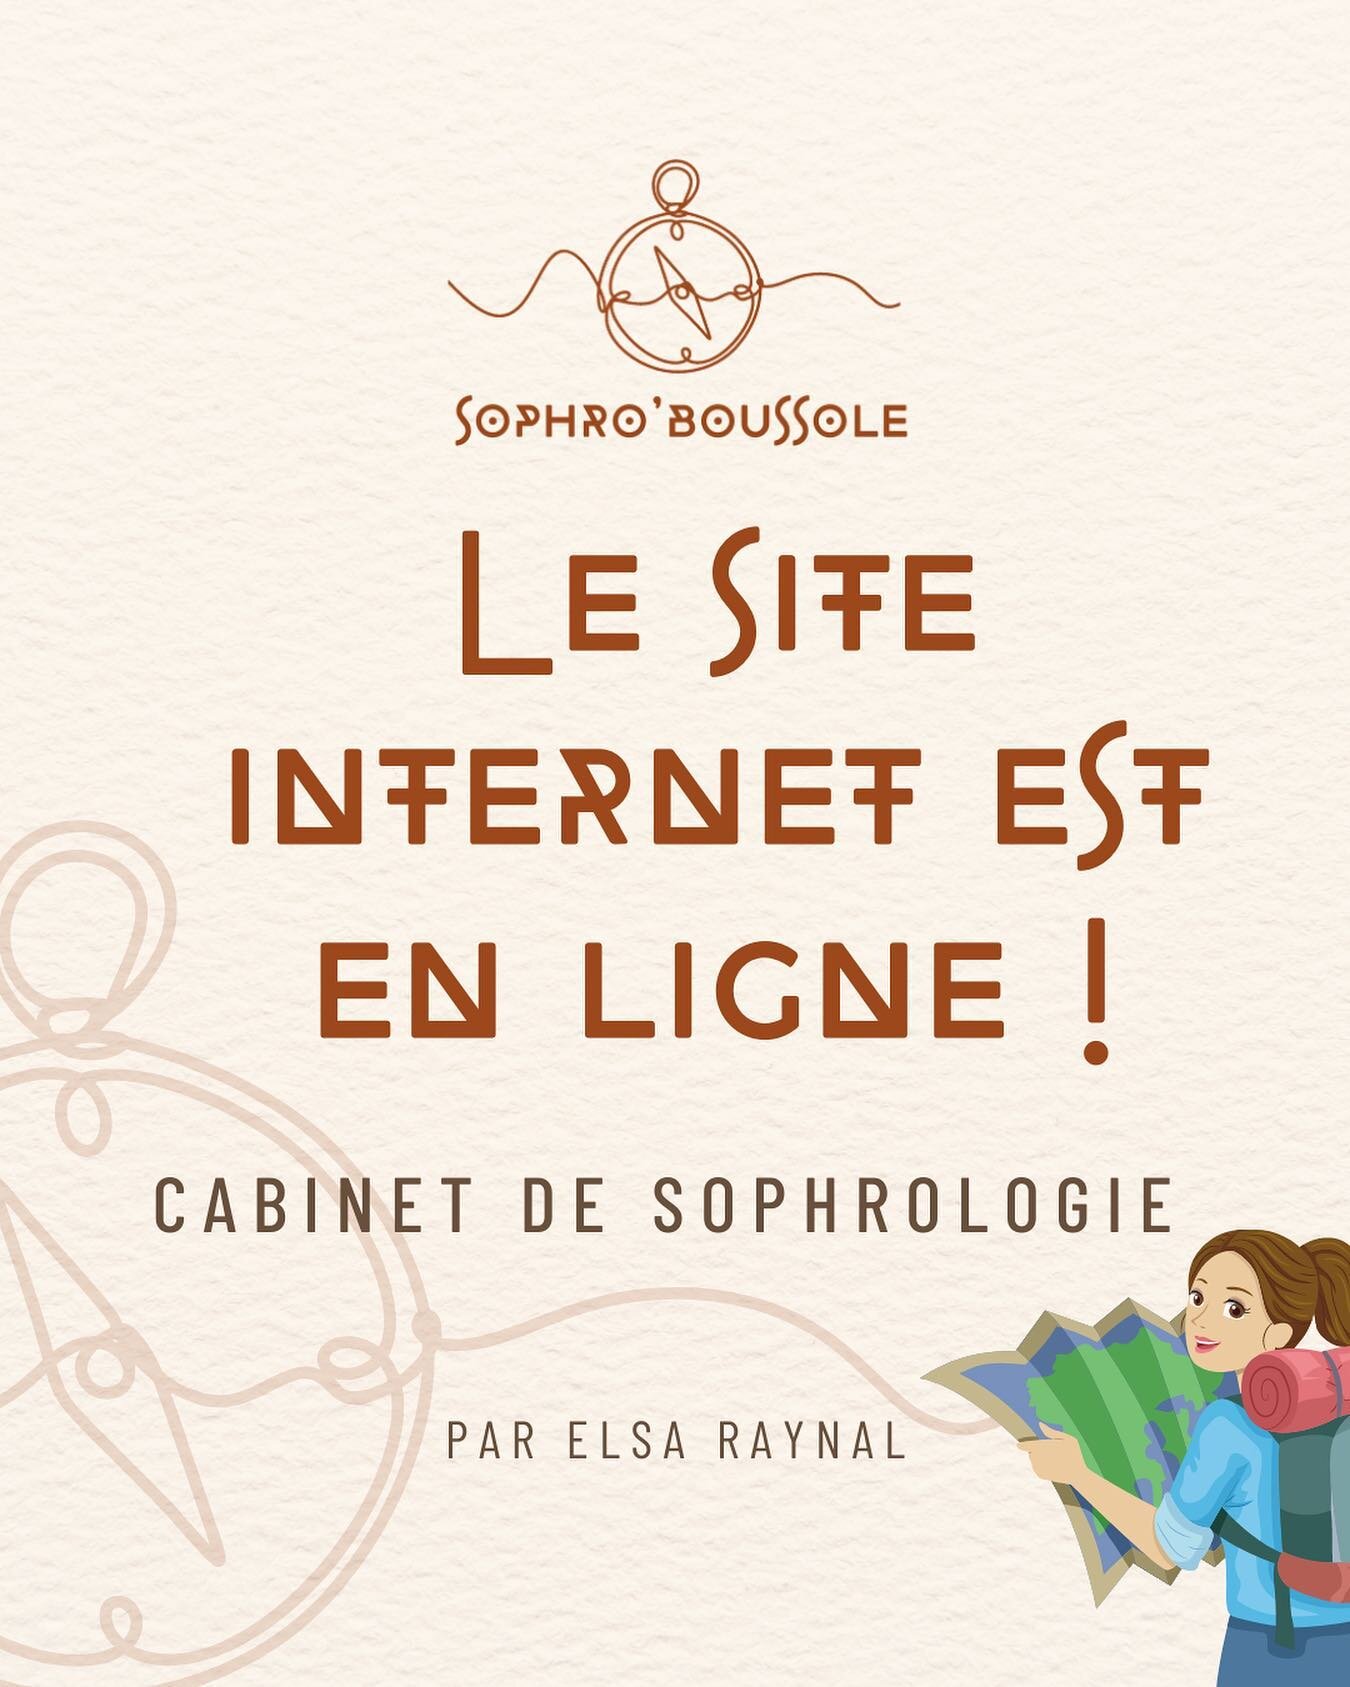 🌟 Grande nouvelle ! Mon site internet Sophro&rsquo;Boussole est d&eacute;sormais en ligne. 🚀 Je suis Elsa, sophrologue passionn&eacute;e, et je vous invite &agrave; explorer cet espace con&ccedil;u pour vous.
Sp&eacute;cialis&eacute;e dans la gesti